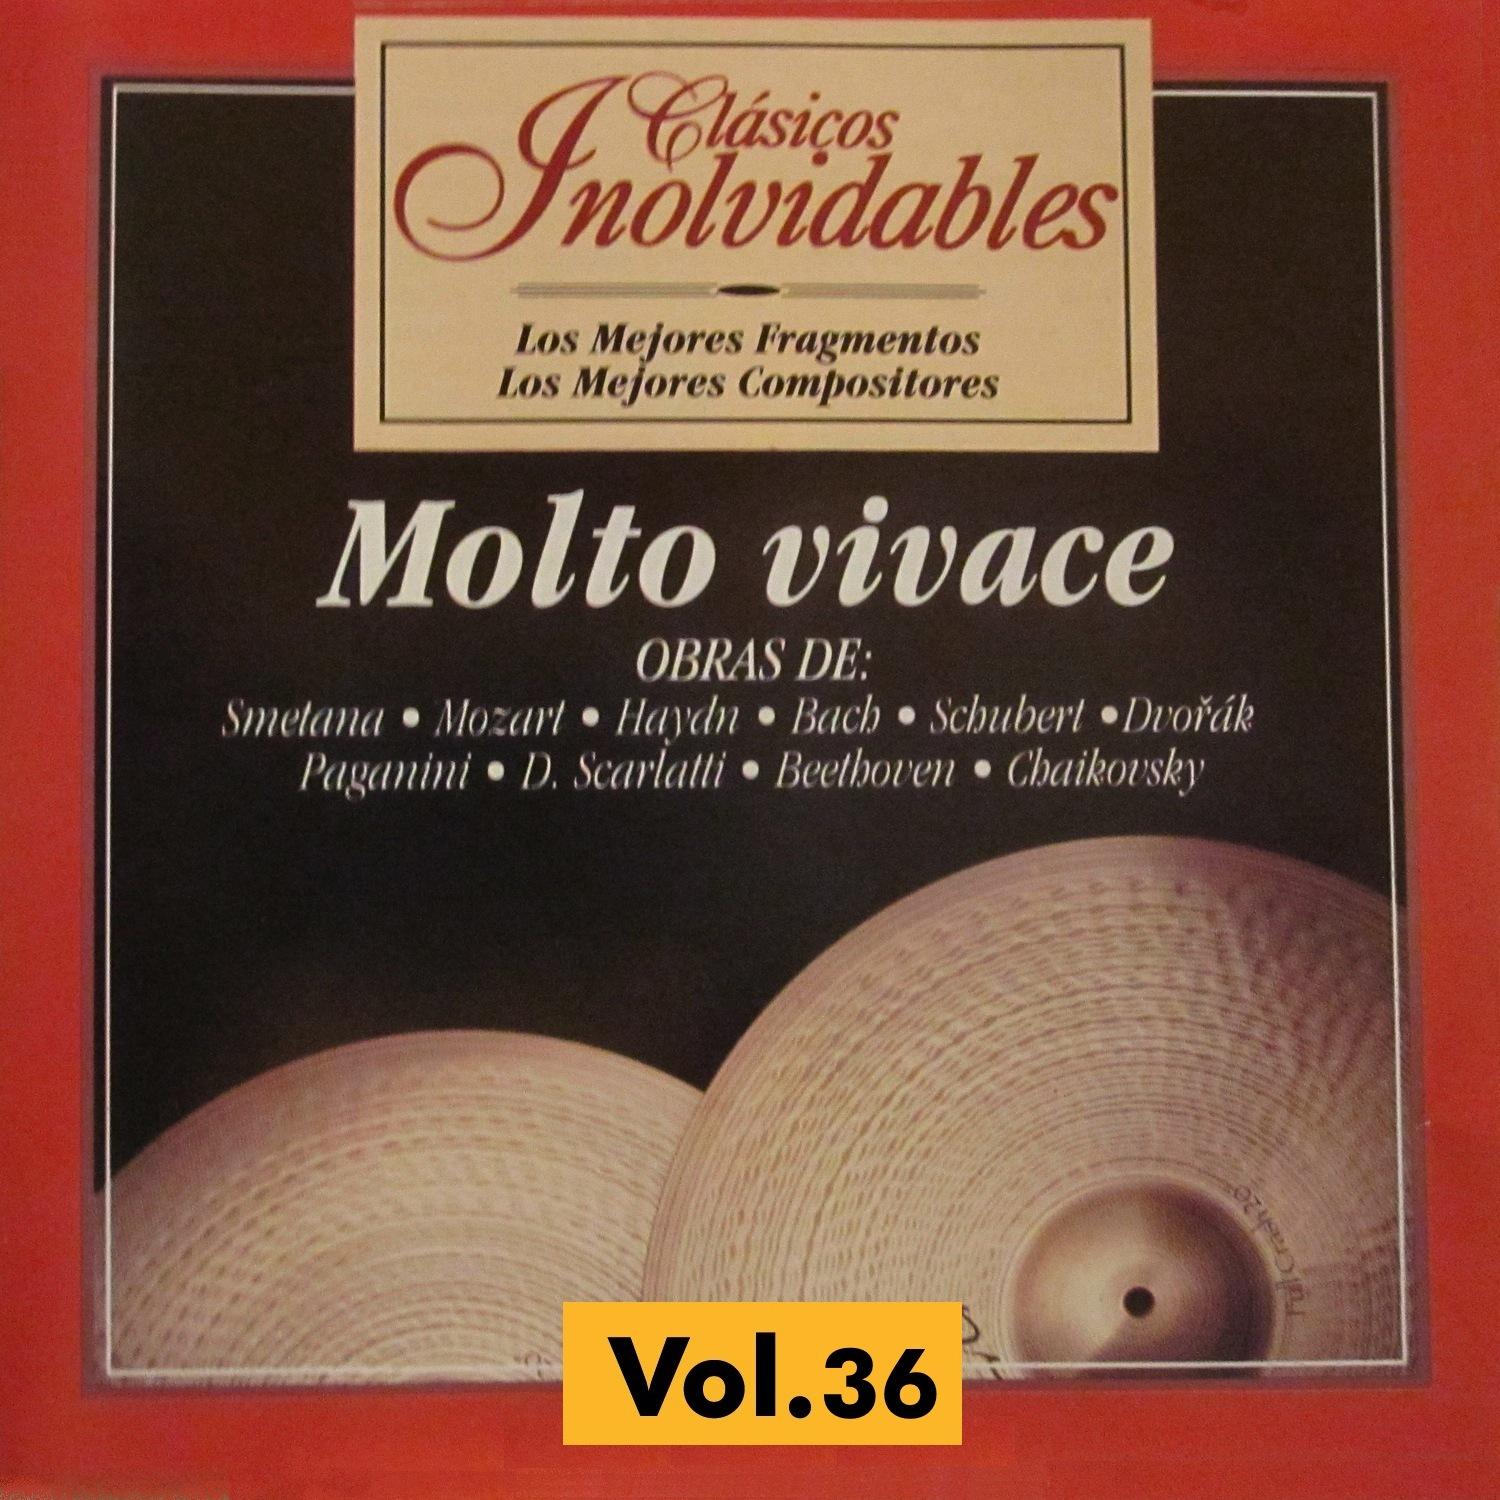 Clásicos Inolvidables Vol. 36, Molto Vivace